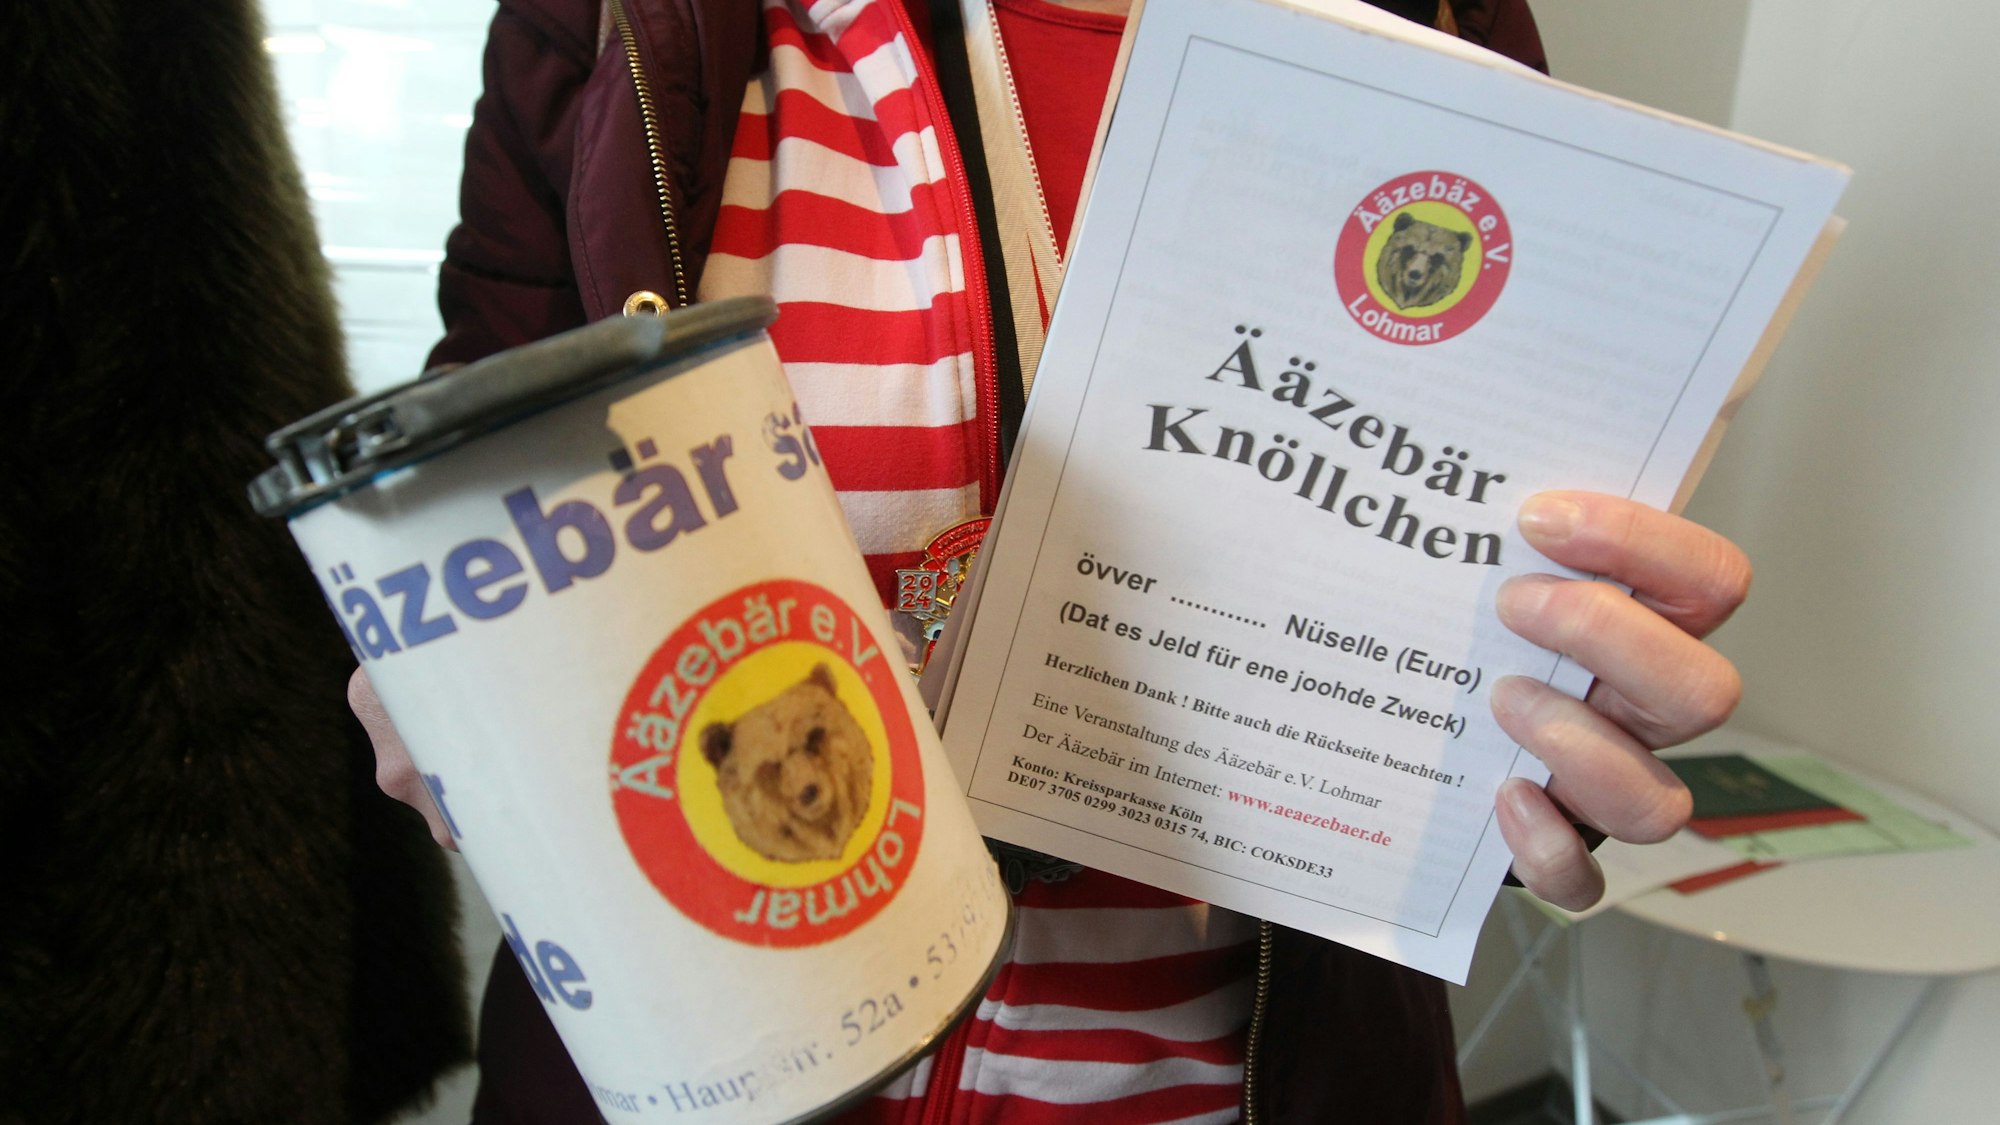 Auf der Sammelbüchse und auf dem Ääzebär-Knöllchen-Zettel prangt das Logo des Ääzebär-Vereins mit einem Bärenkopf.